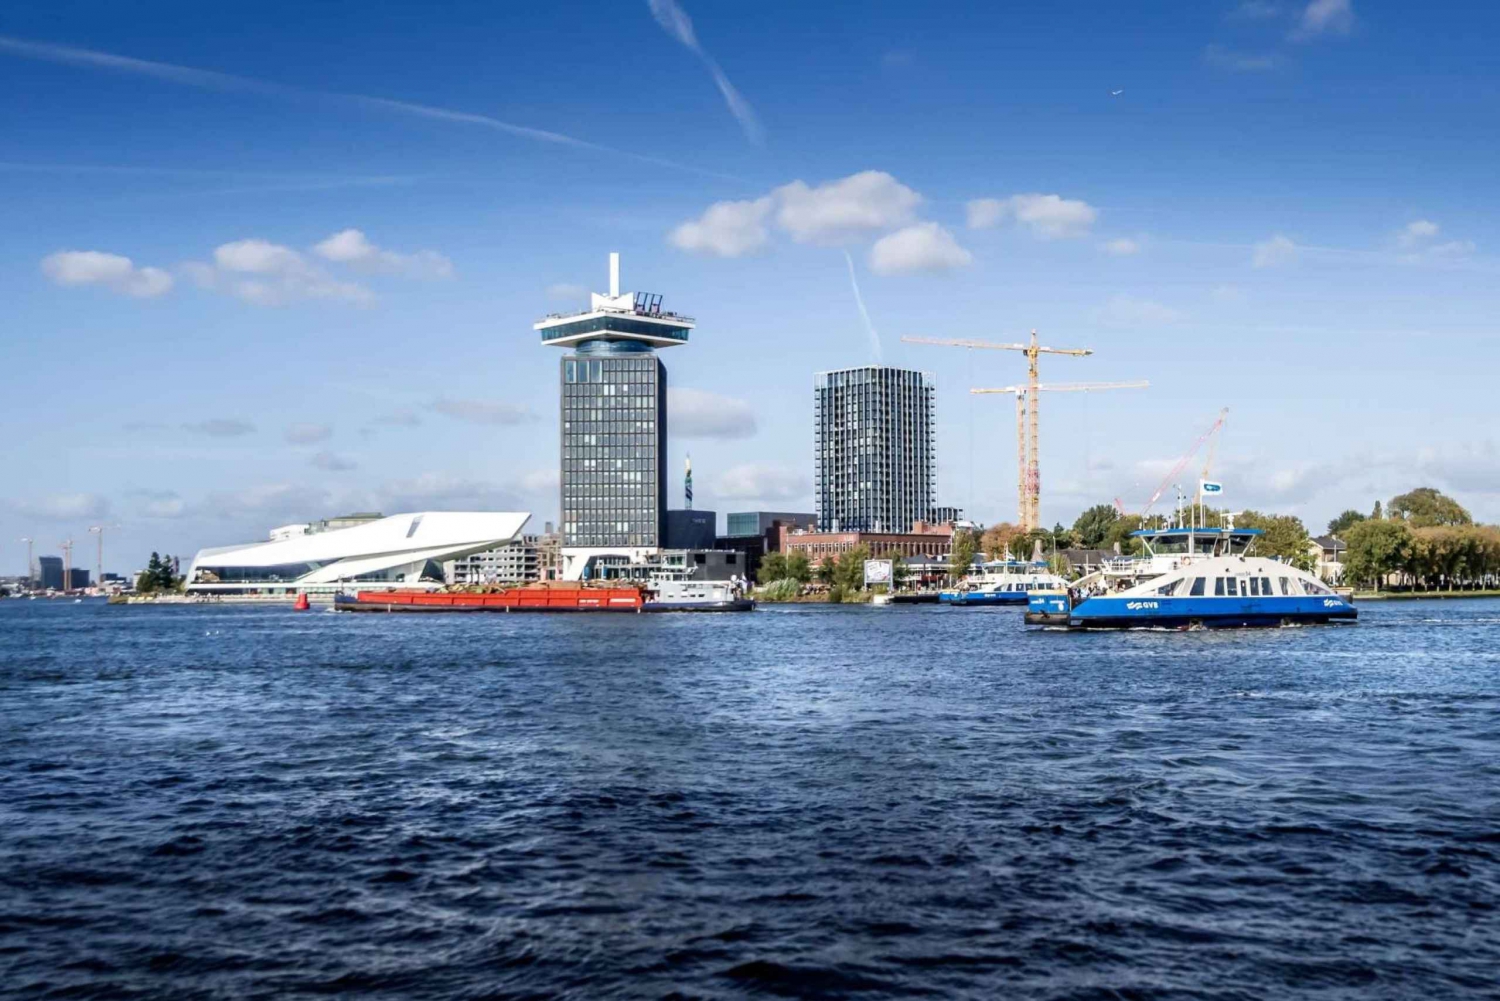 I migliori biglietti prioritari per lo Skydeck, tour del punto panoramico di Amsterdam